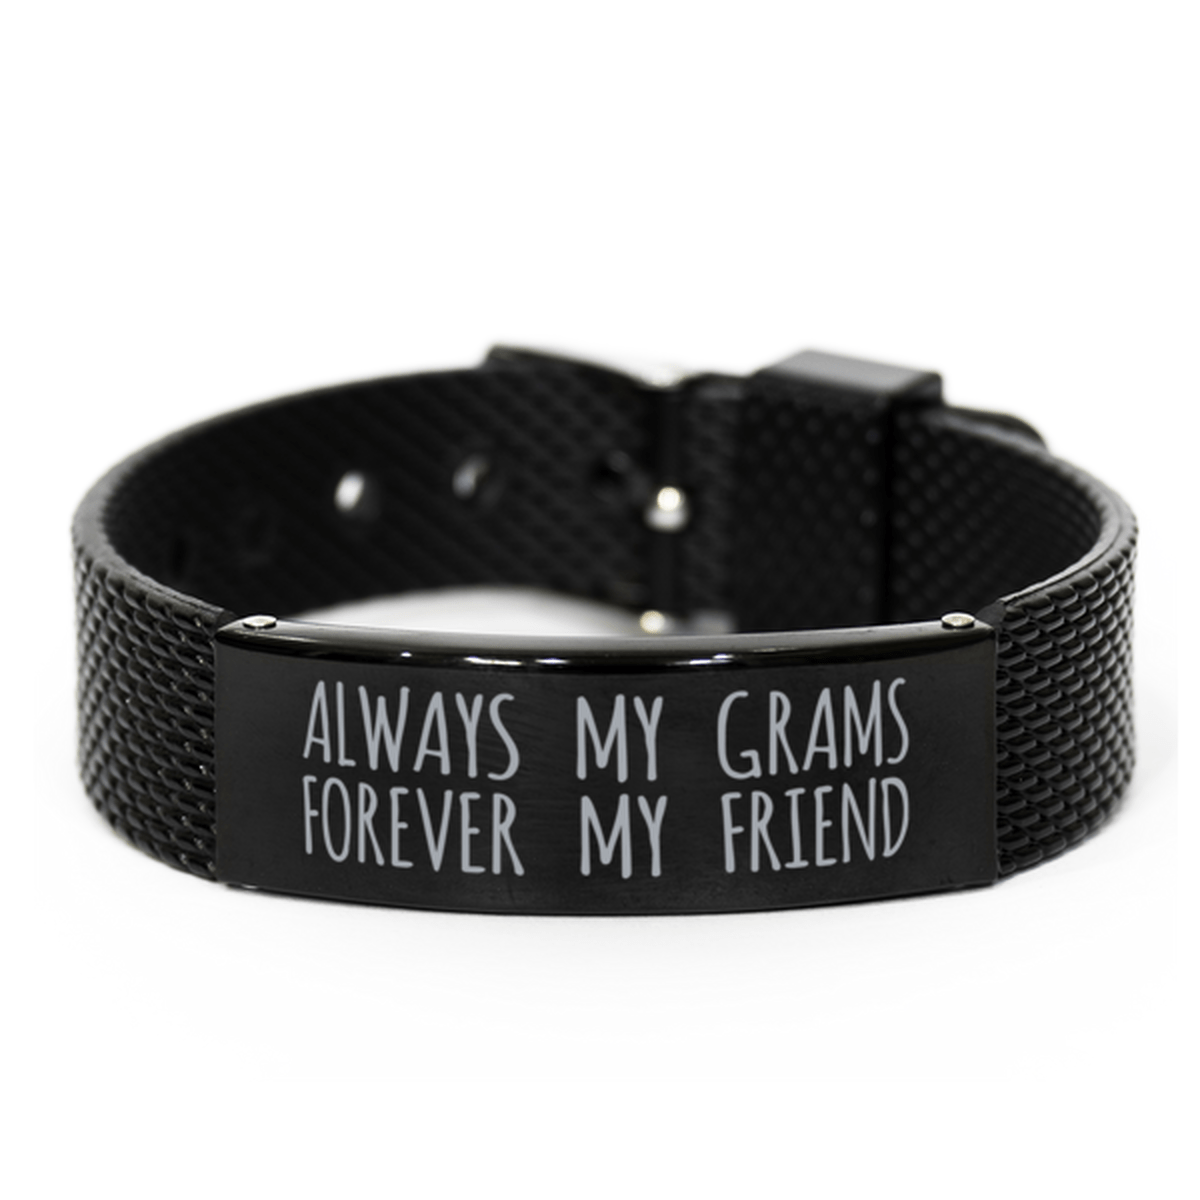 Inspirational Grams Black Shark Mesh Bracelet, Always My Grams Forever My Friend, Best Birthday Gifts for Family Friends